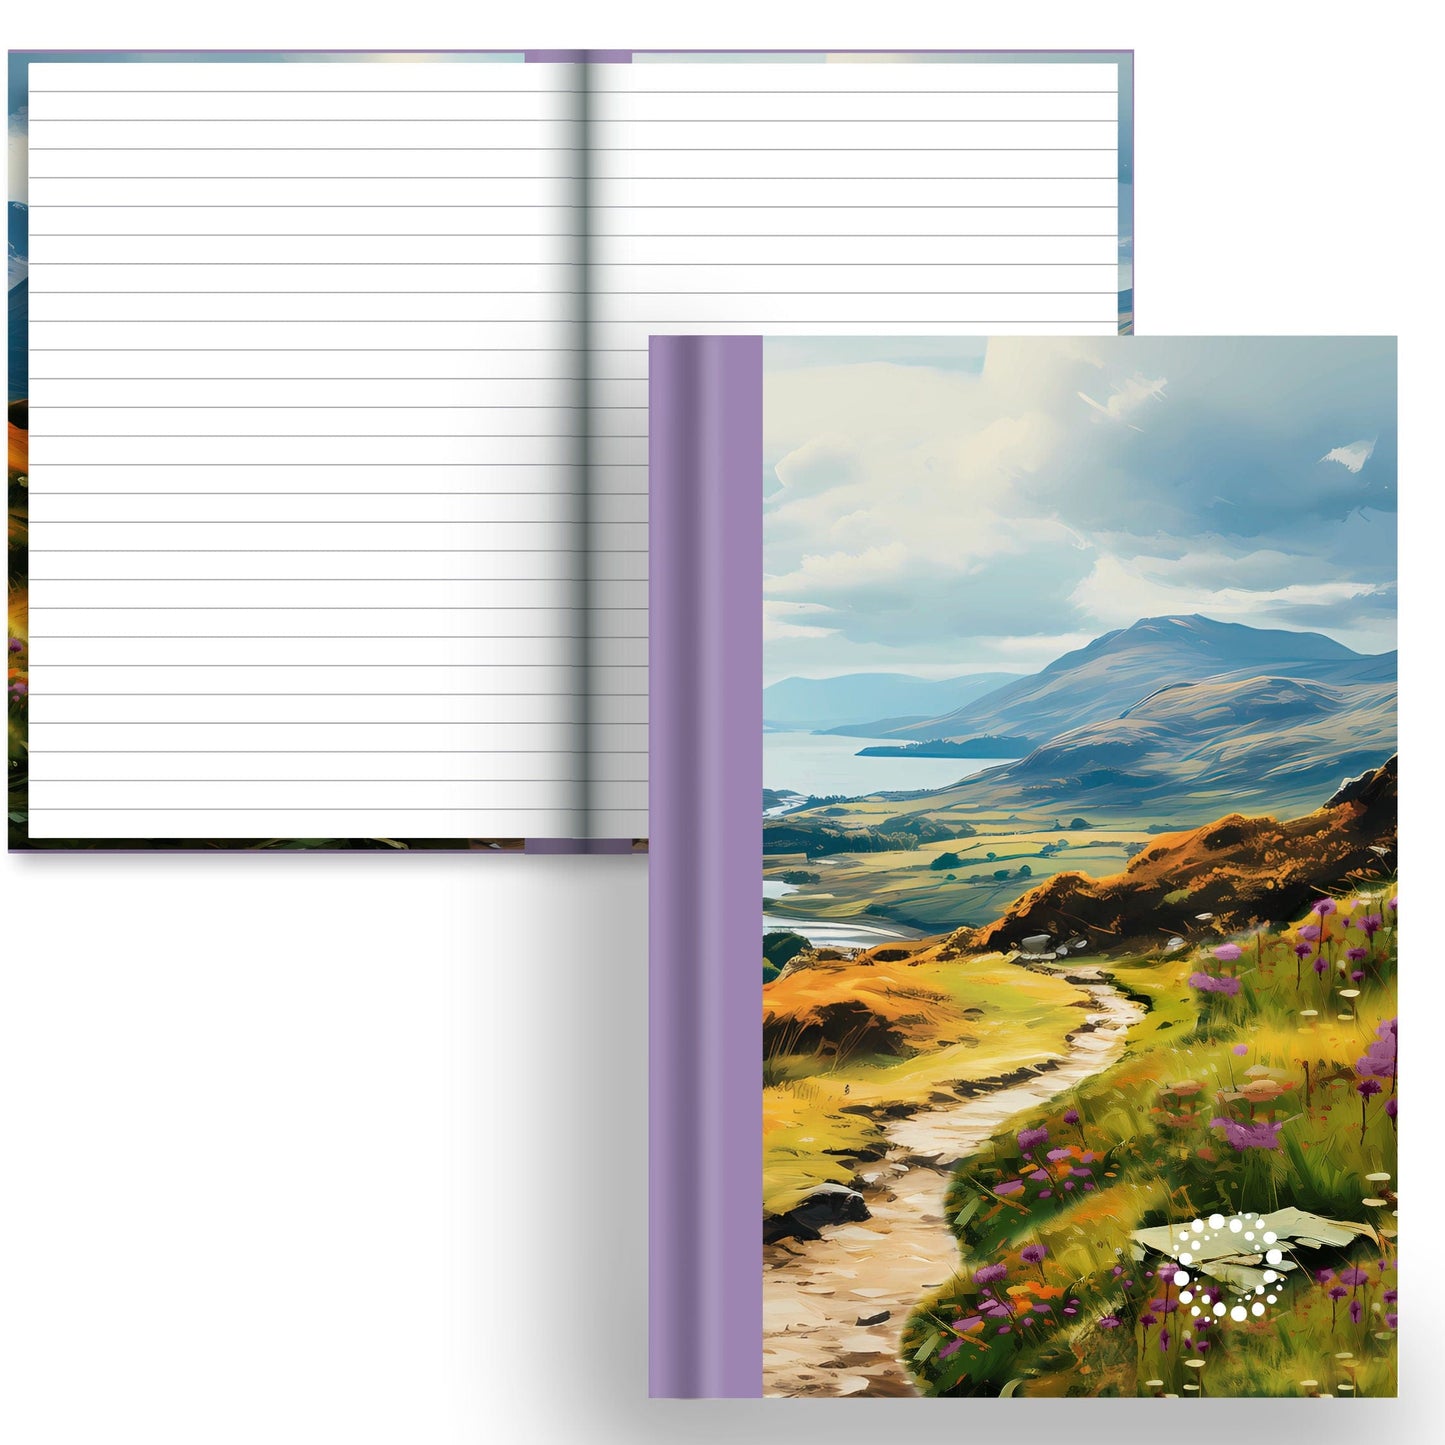 DayDot Journals A5 Notebook Lined Paper Glens - A5 Hardback Notebook